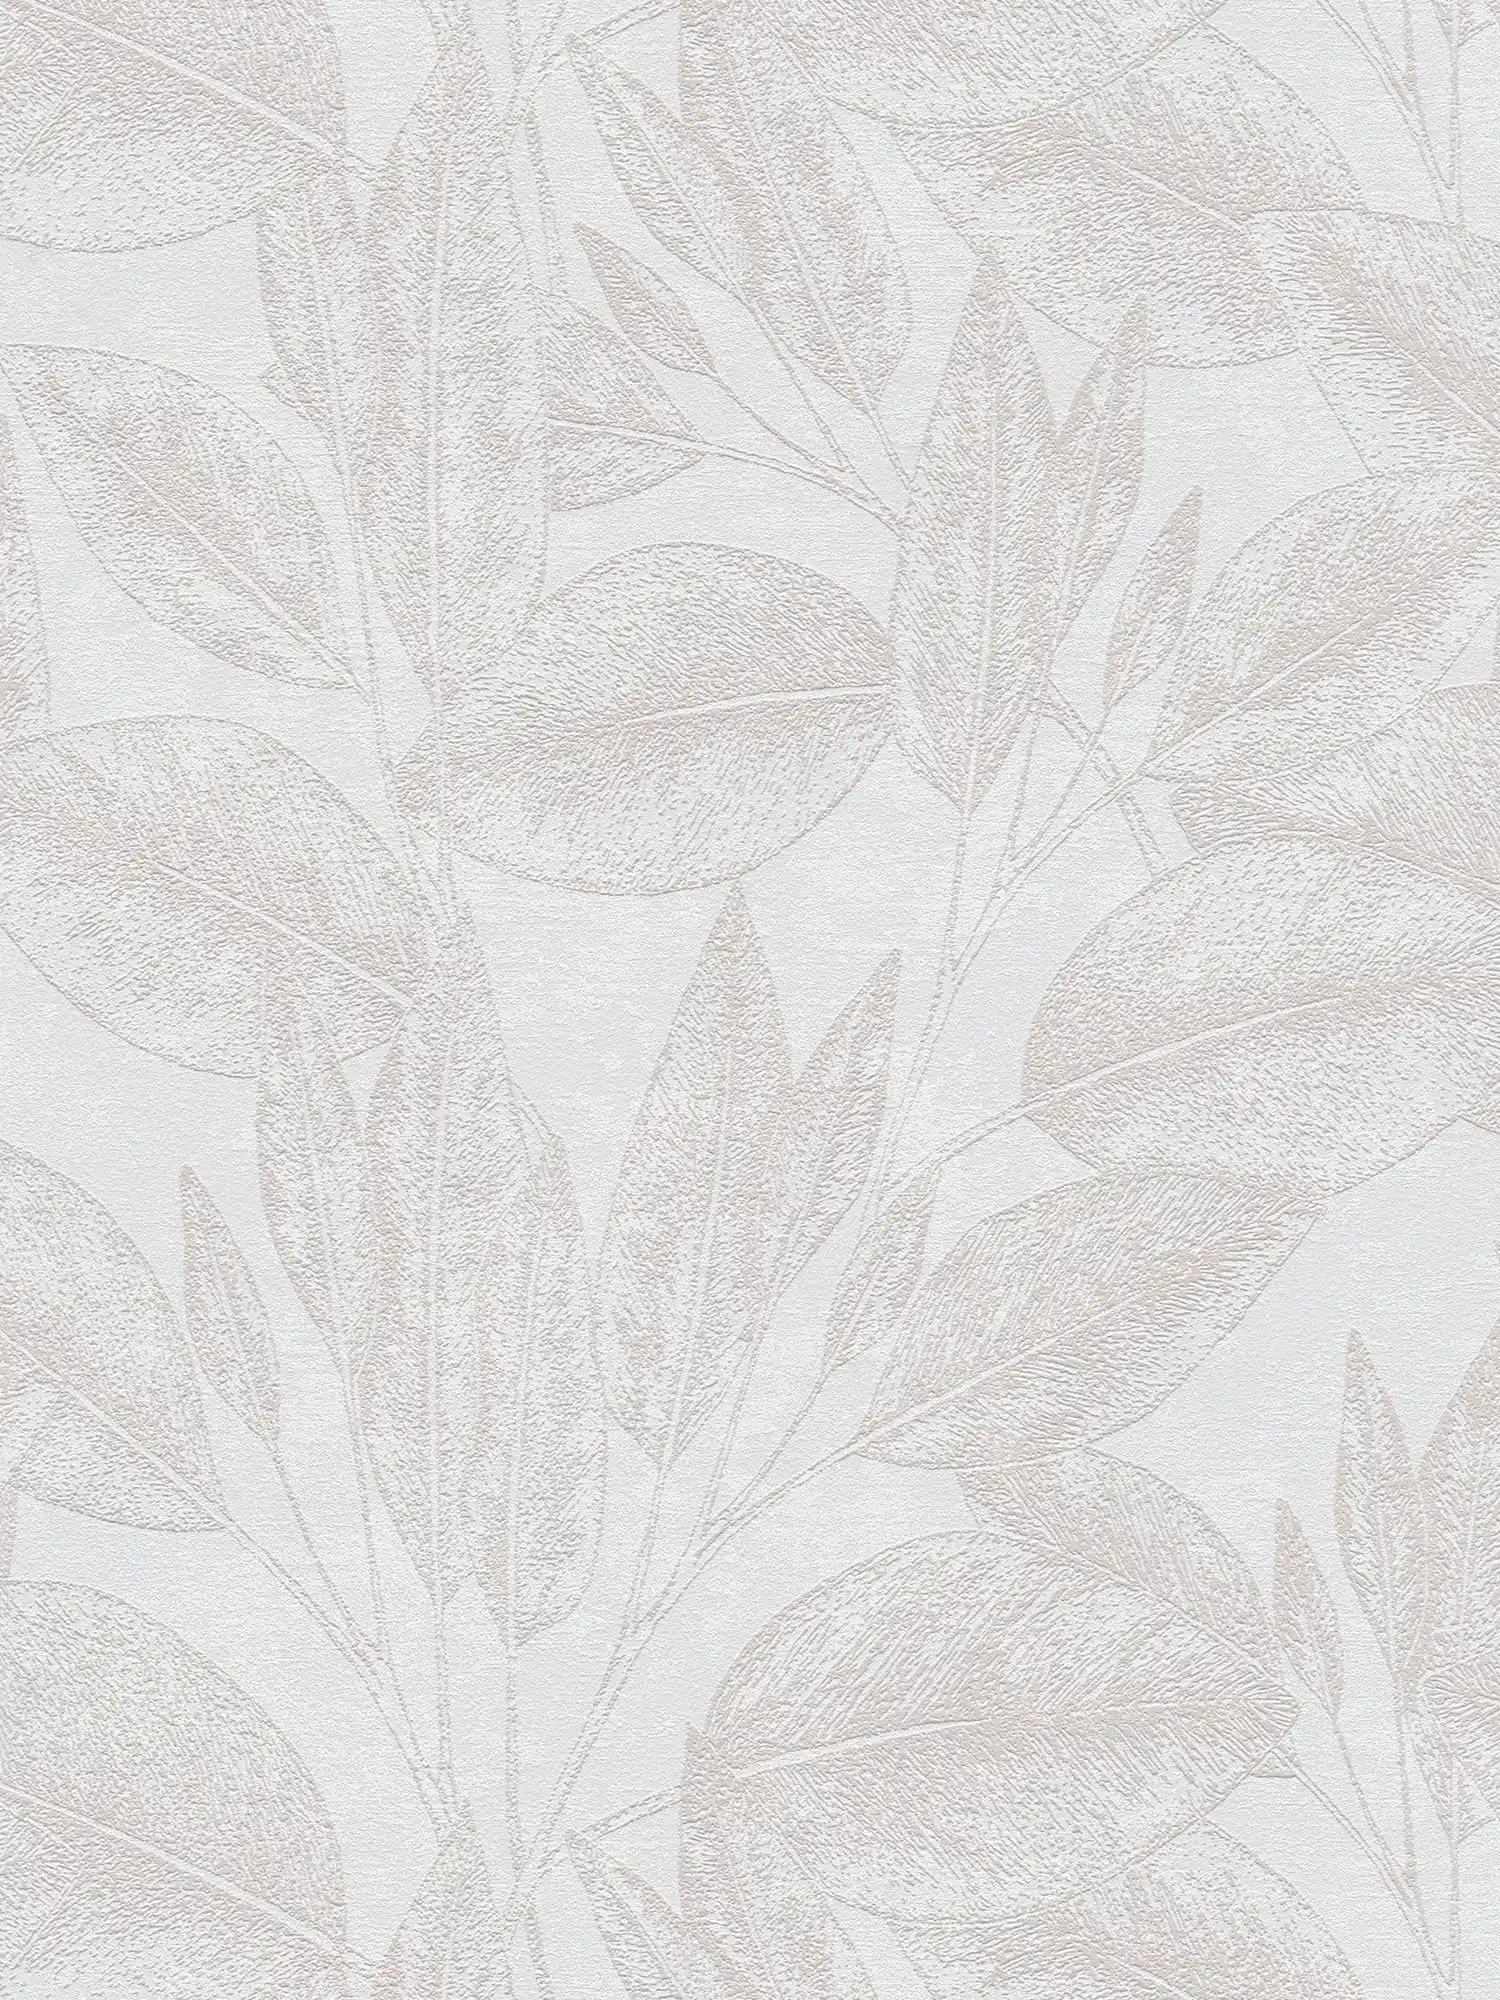 Papier peint vintage à motifs de feuilles - beige
